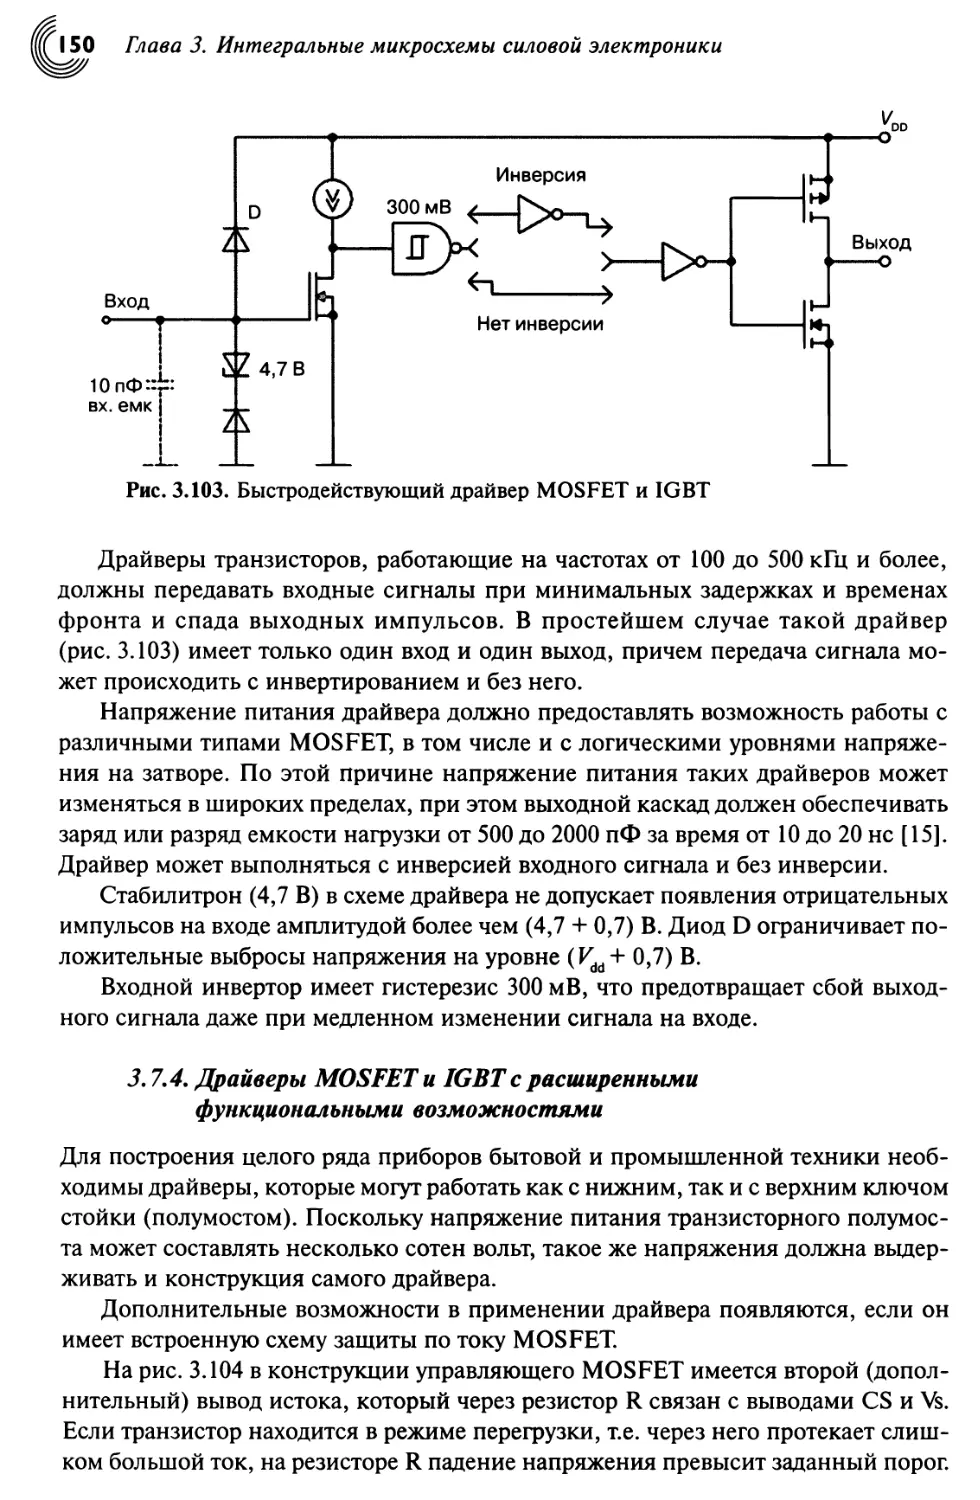 3.7.4. Драйверы MOSFET и IGBT с расширенными функциональными возможностями